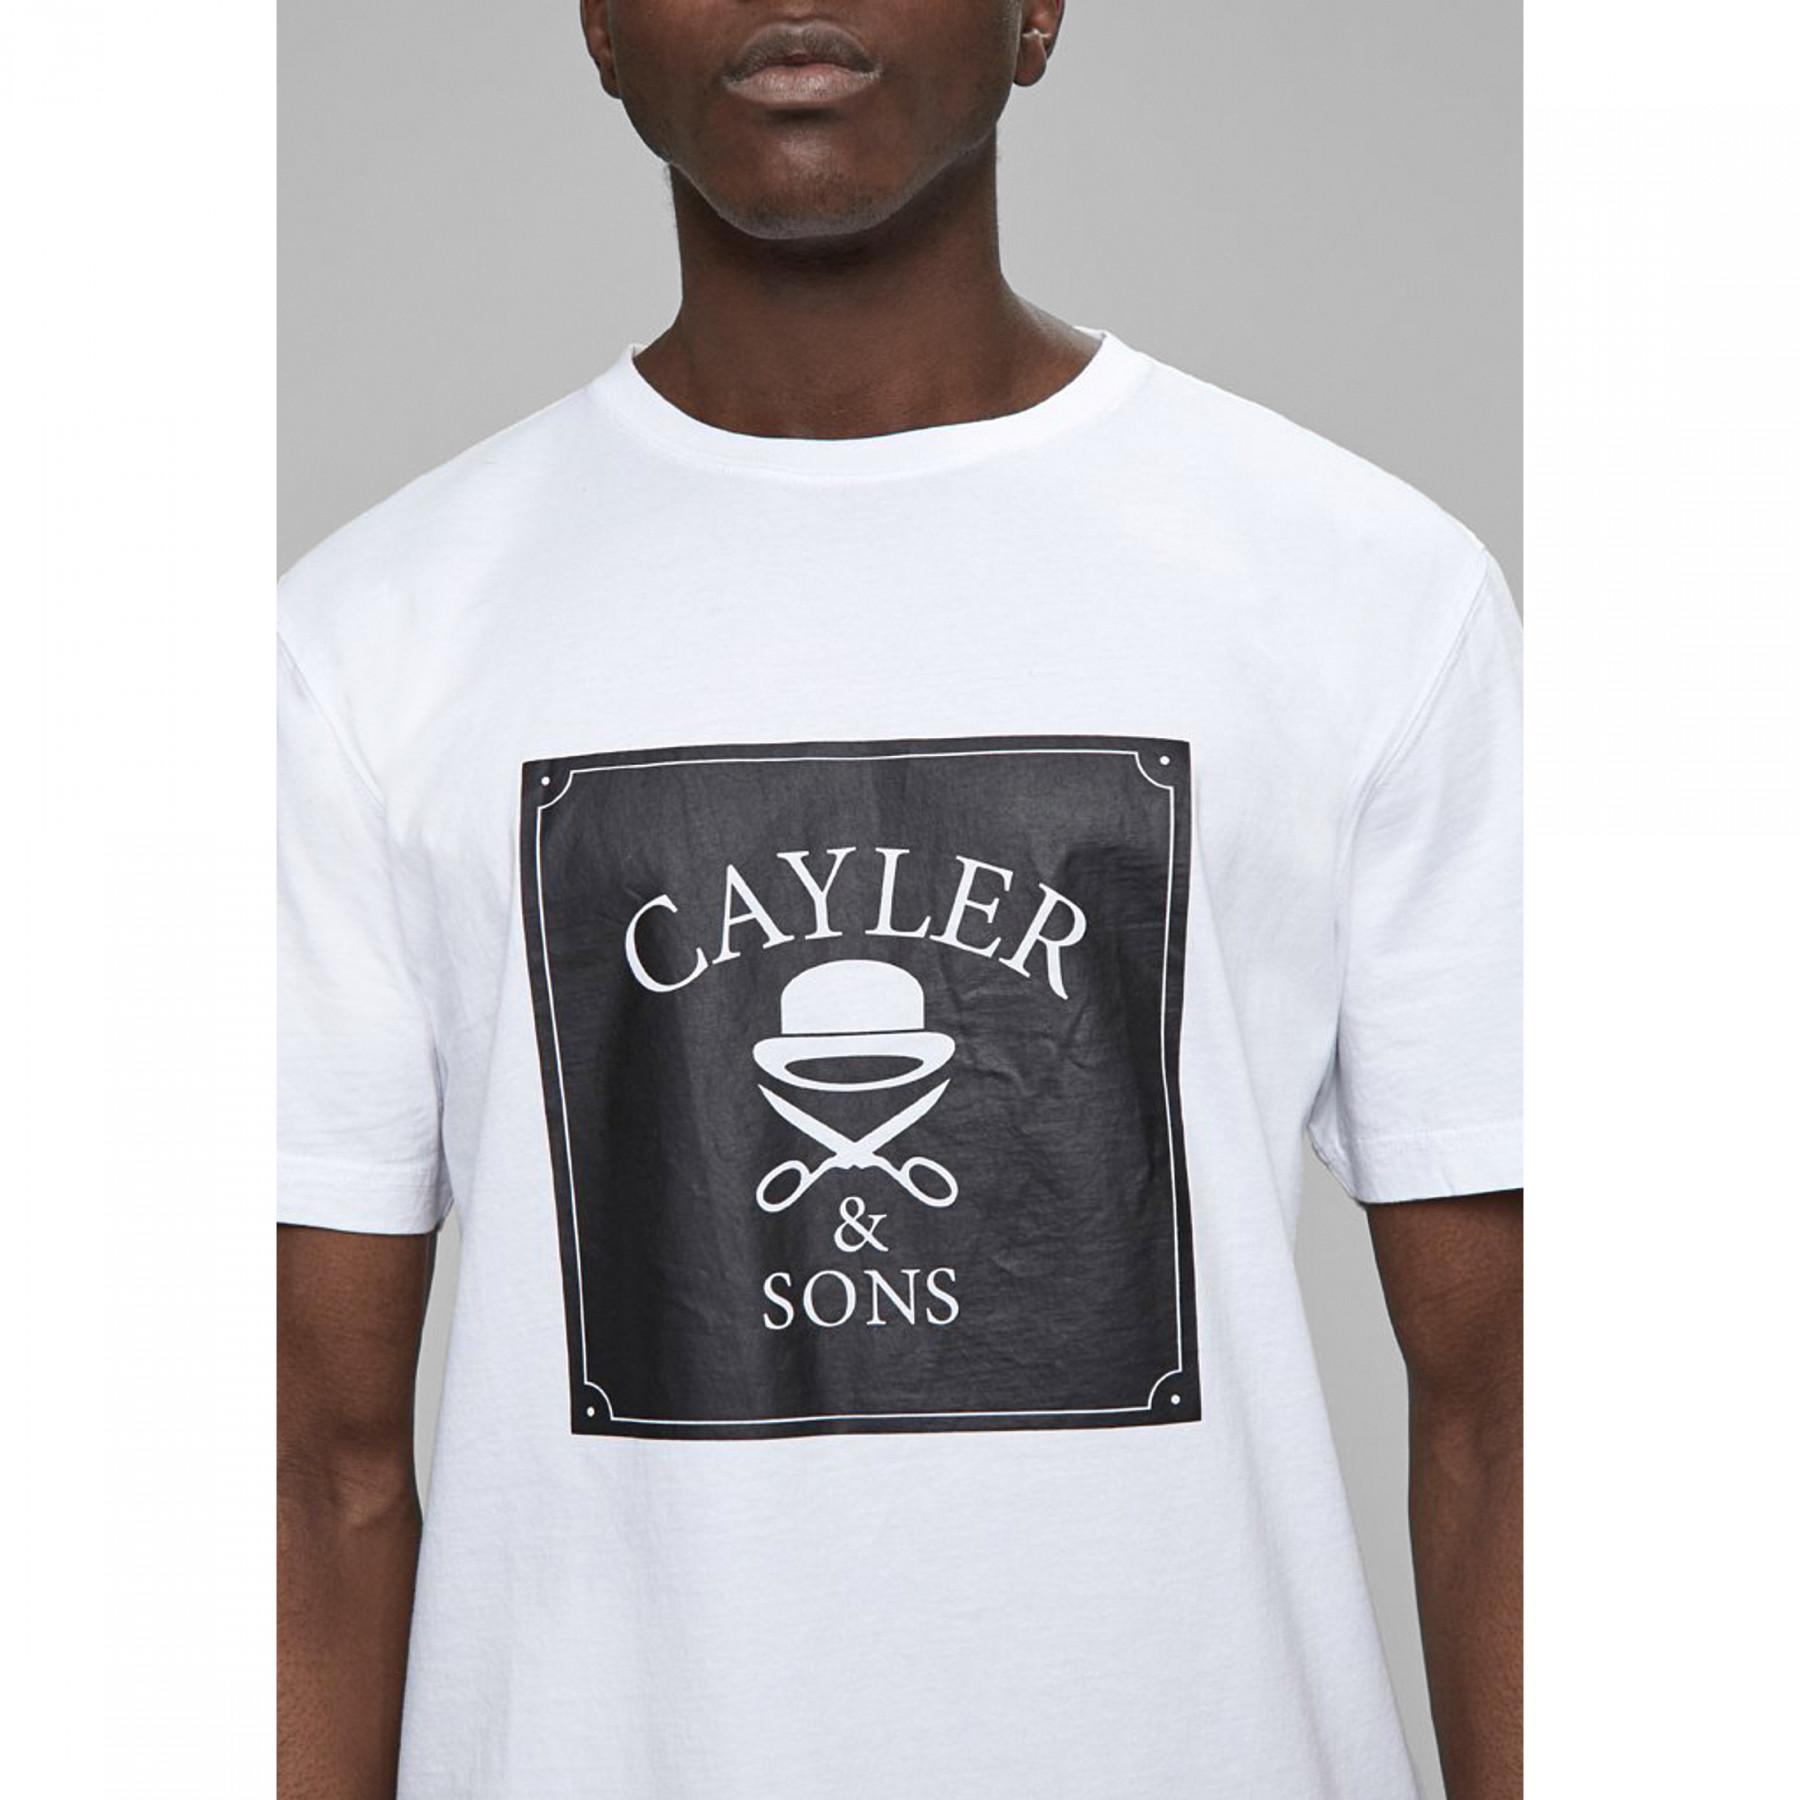 T-shirt Cayler & Sons wl box